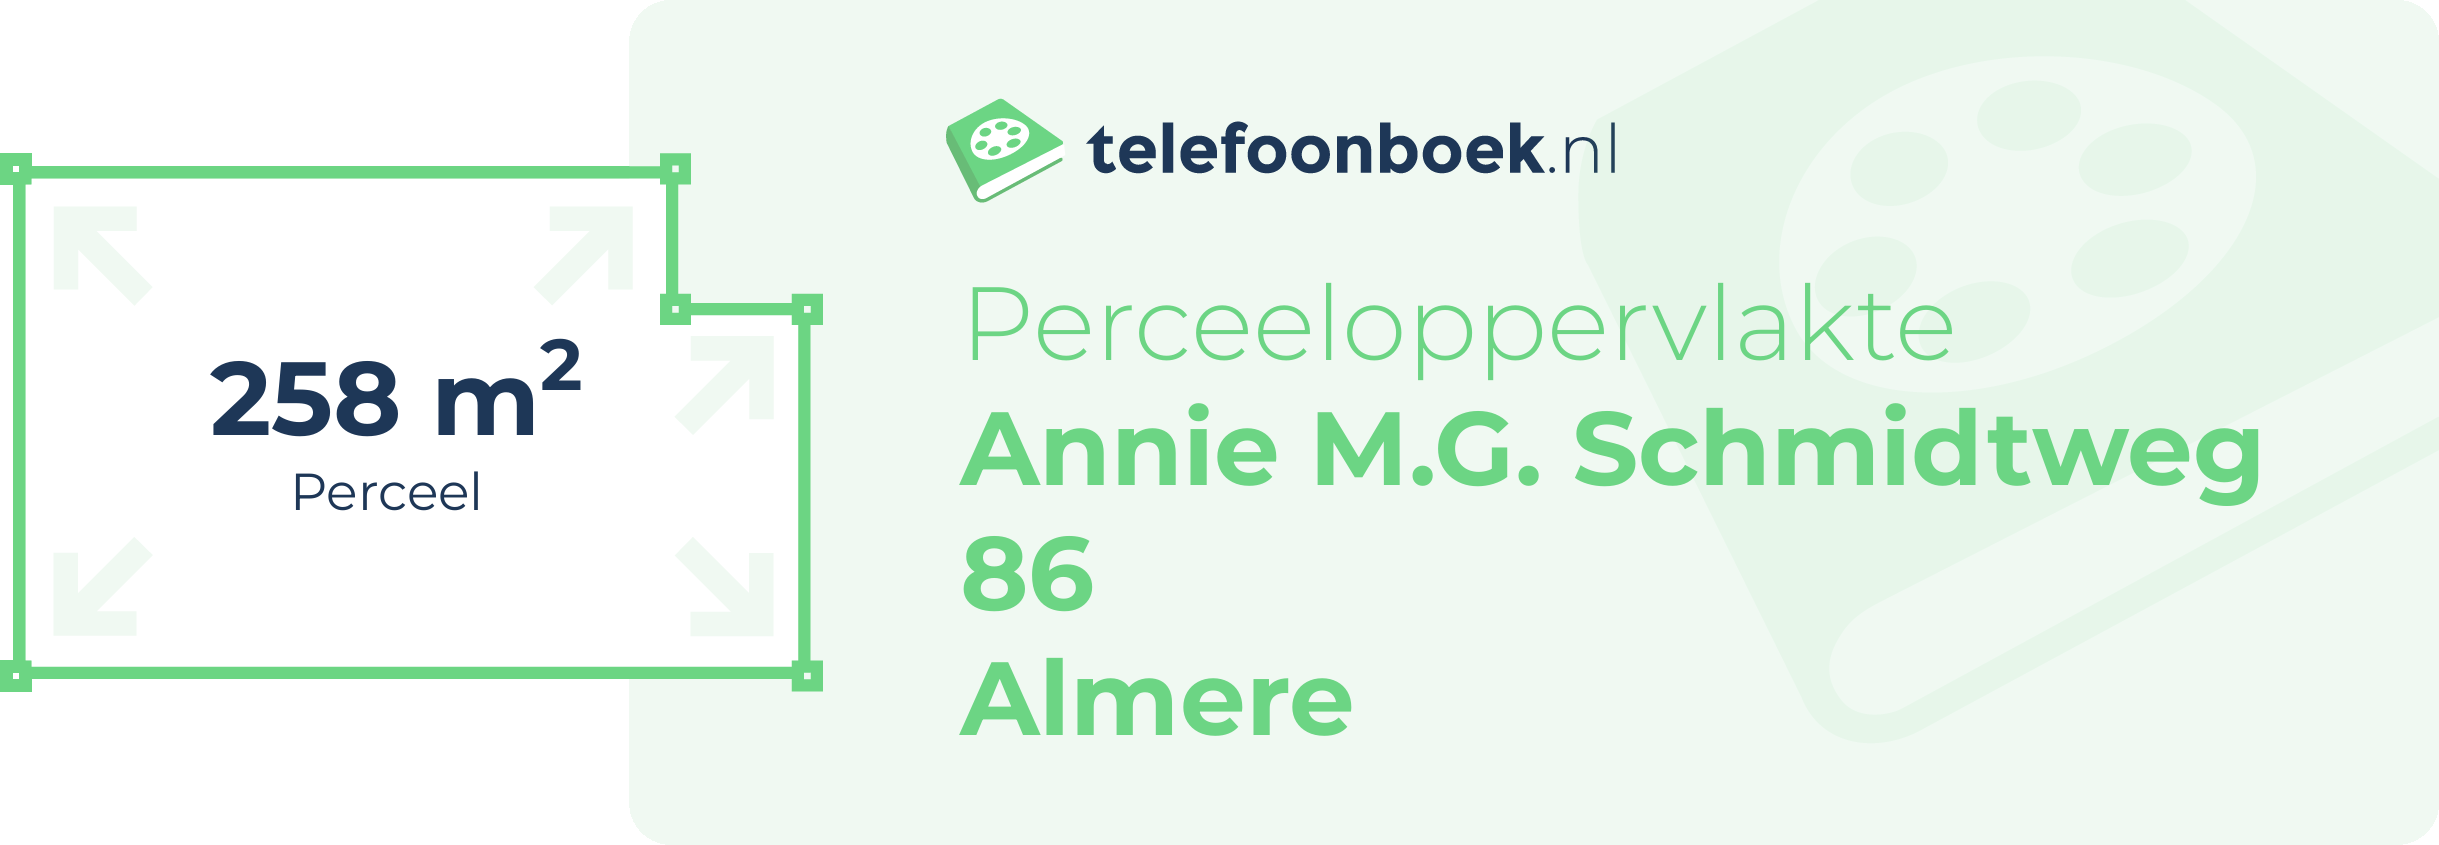 Perceeloppervlakte Annie M.G. Schmidtweg 86 Almere